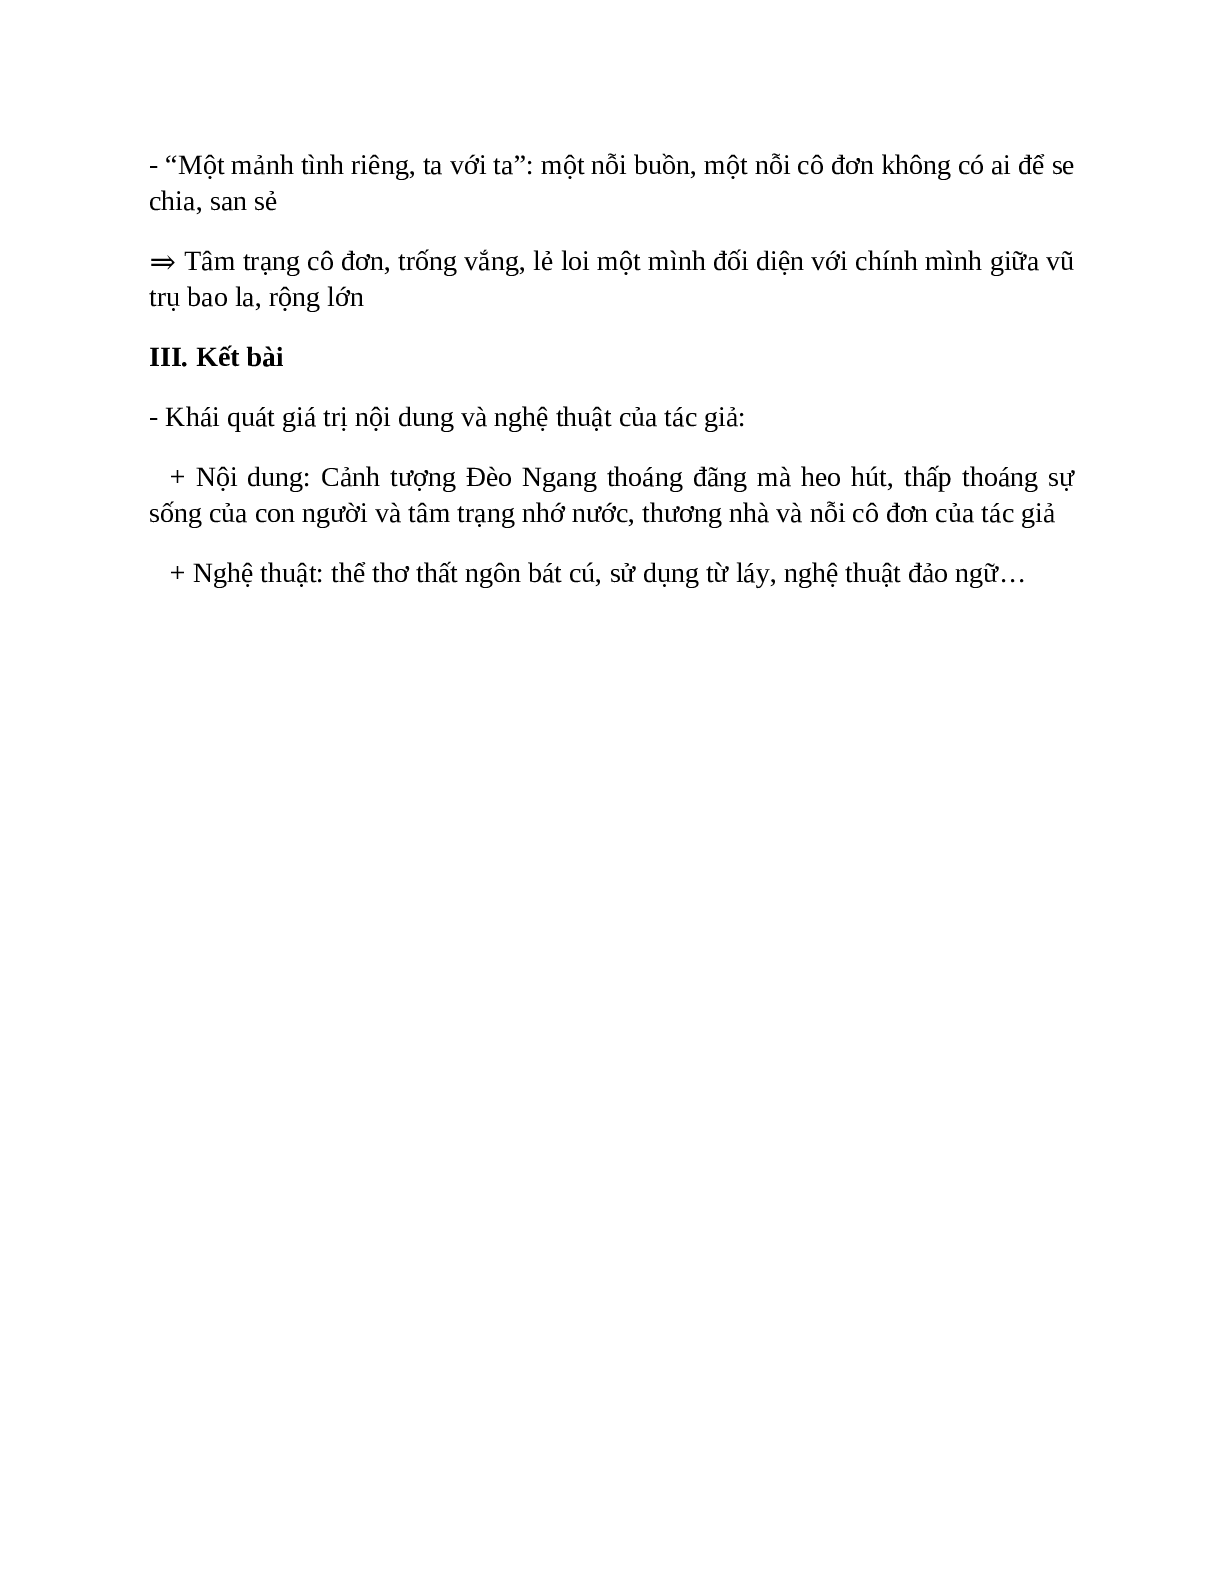 Qua đèo Ngang – nội dung, dàn ý phân tích, bố cục, tóm tắt (trang 4)